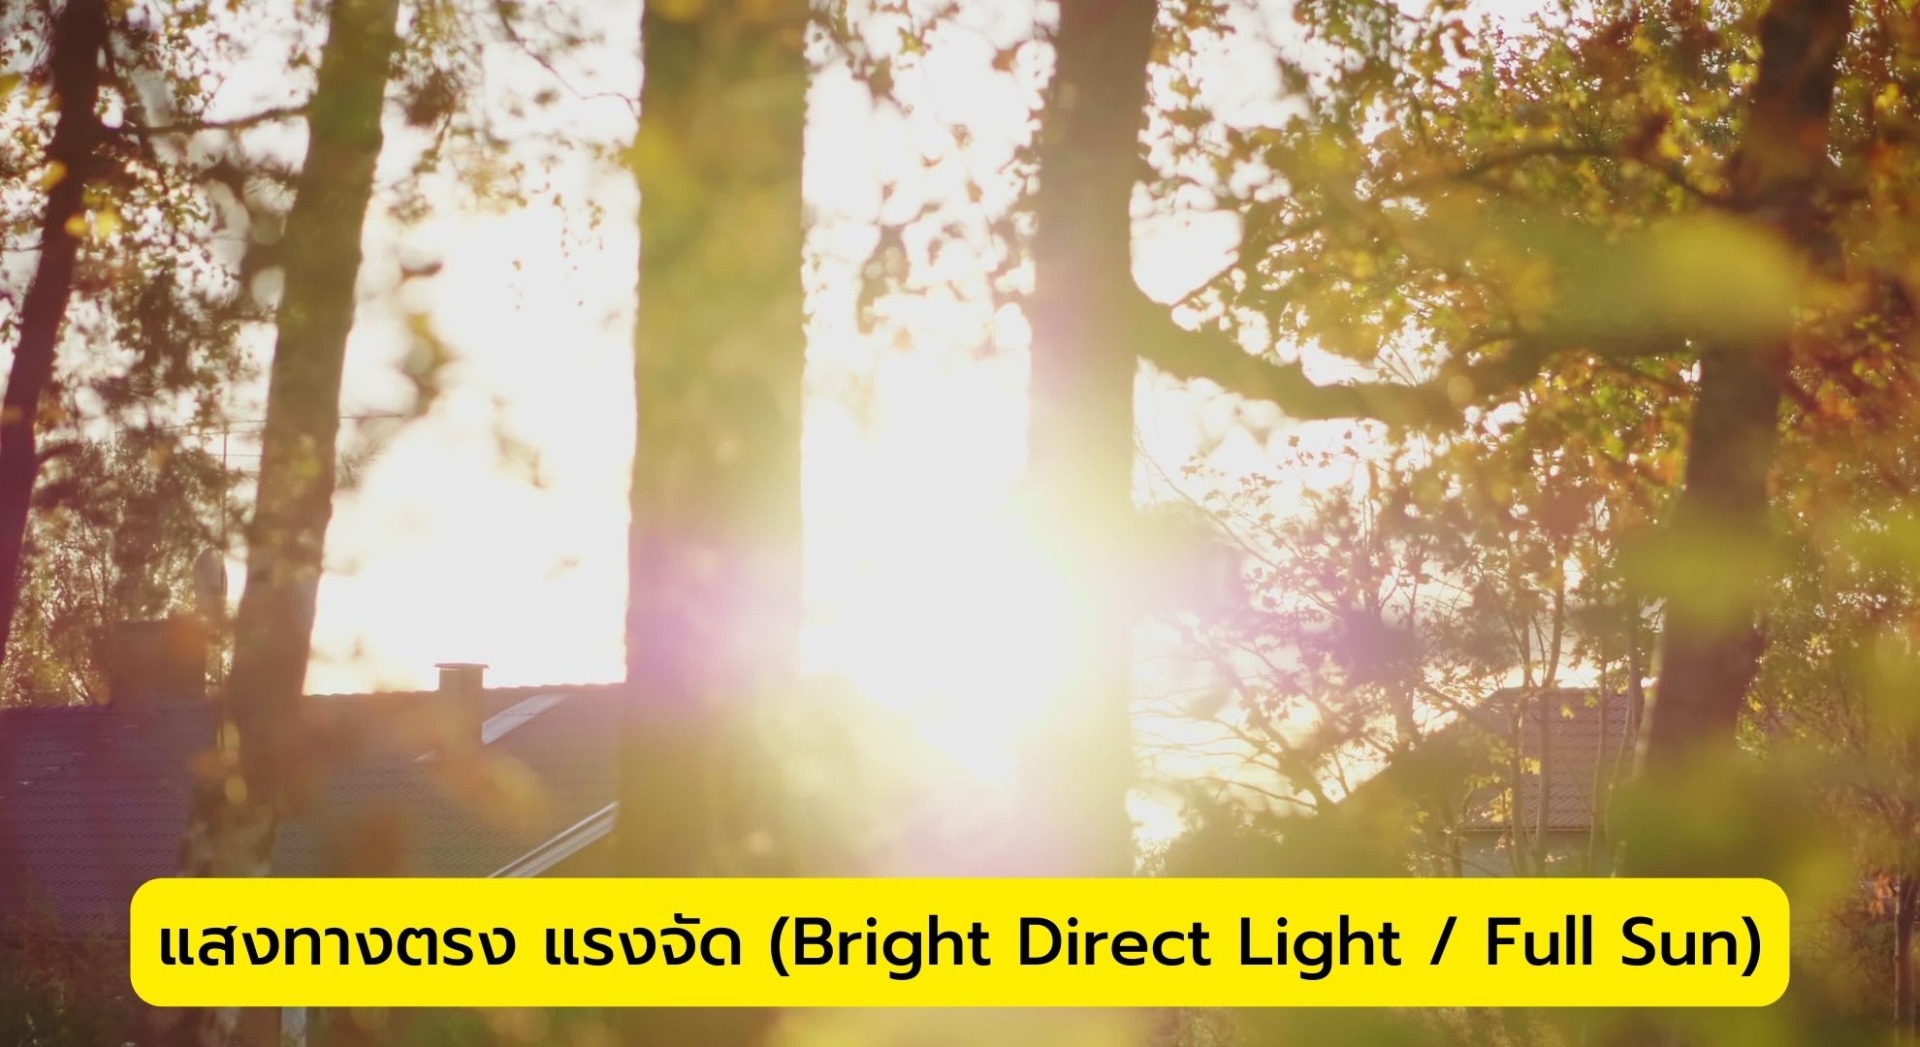 แสงทางตรง แรงจัด (Bright Direct Light / Full Sun)